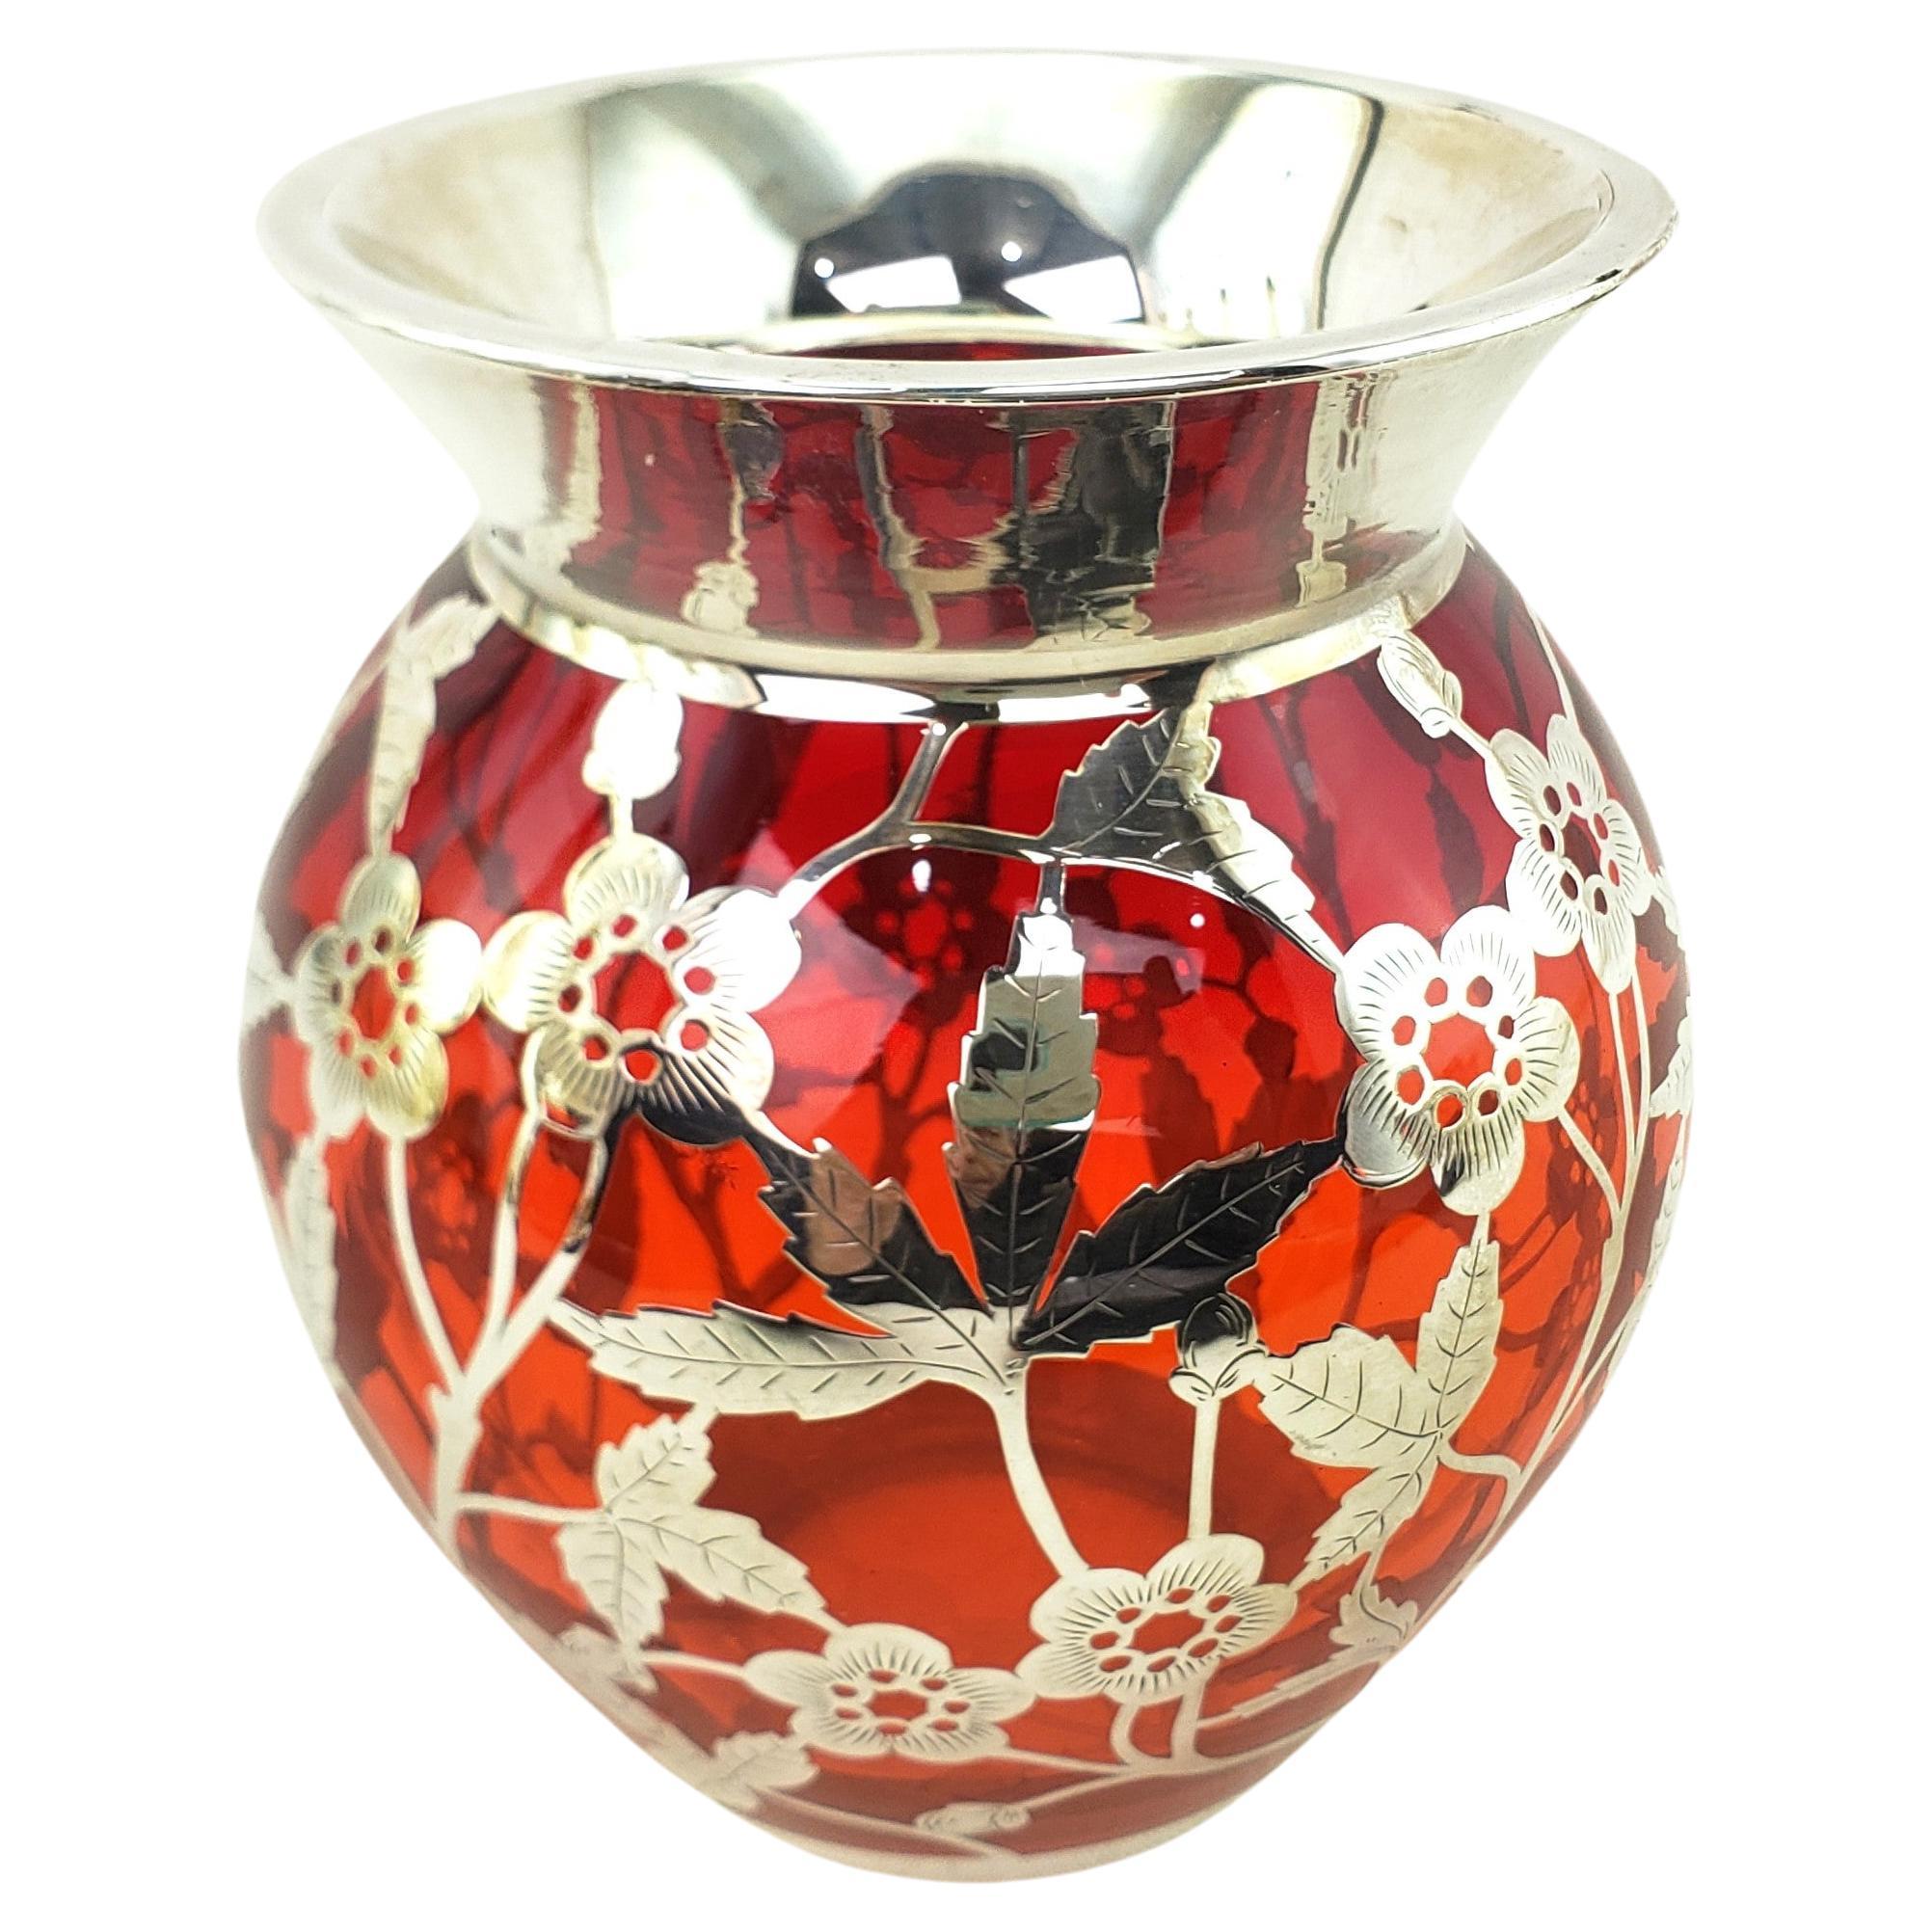 Diese gut ausgeführte antike Vase mit Silberauflage ist unsigniert, stammt aber vermutlich aus den Vereinigten Staaten und wurde um 1920 im Art-déco-Stil hergestellt. Die Vase besteht aus dickem rubinrotem Glas mit schwerem Silberüberzug, der